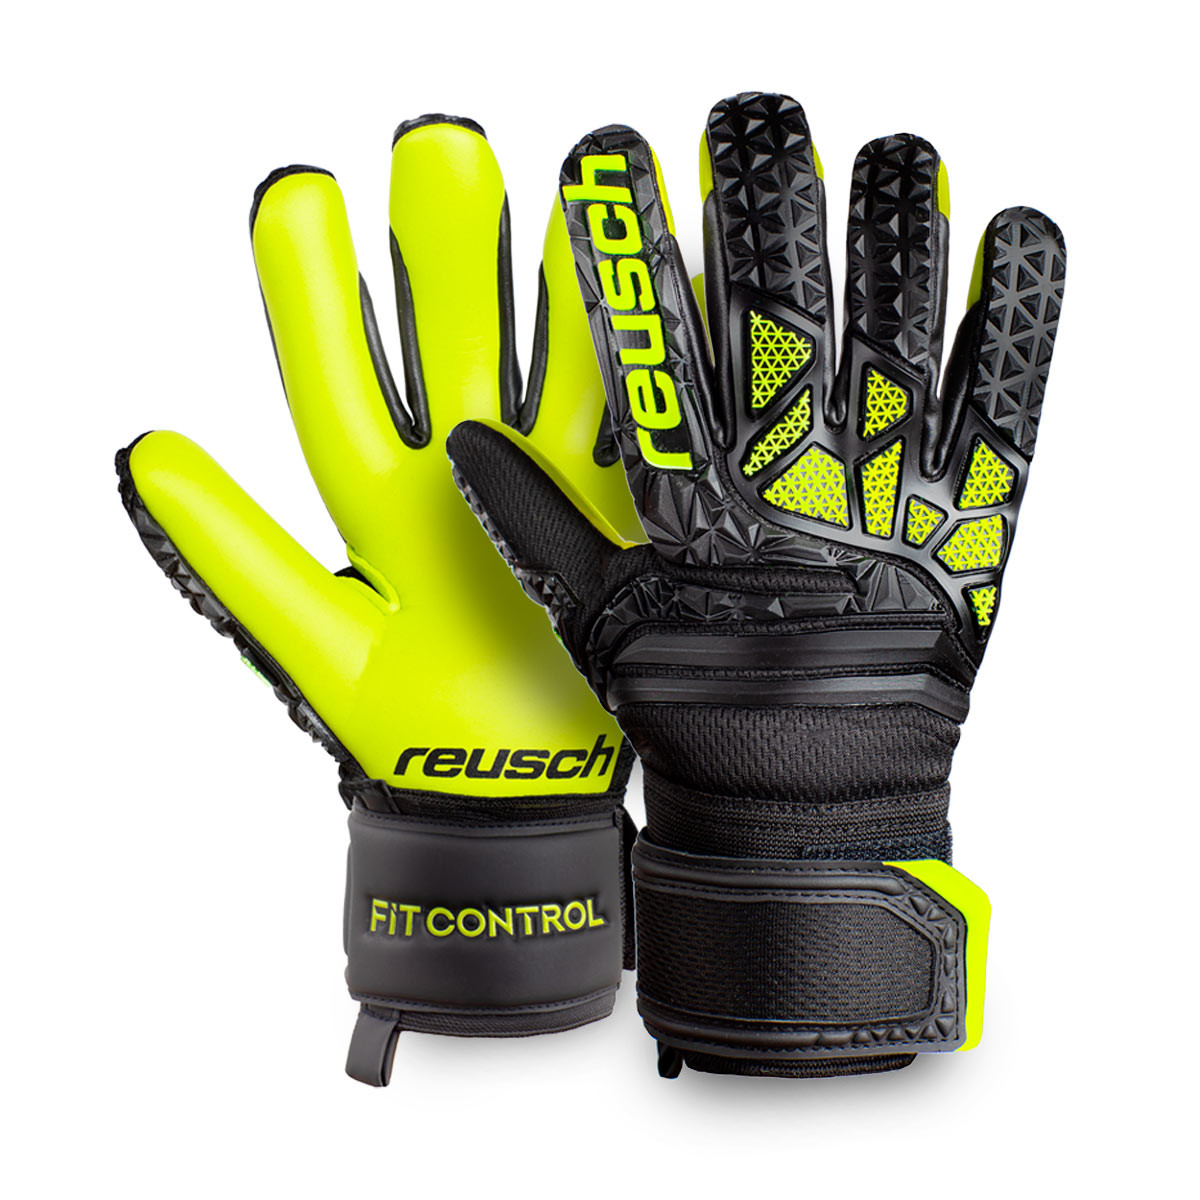 lloris goalkeeper gloves